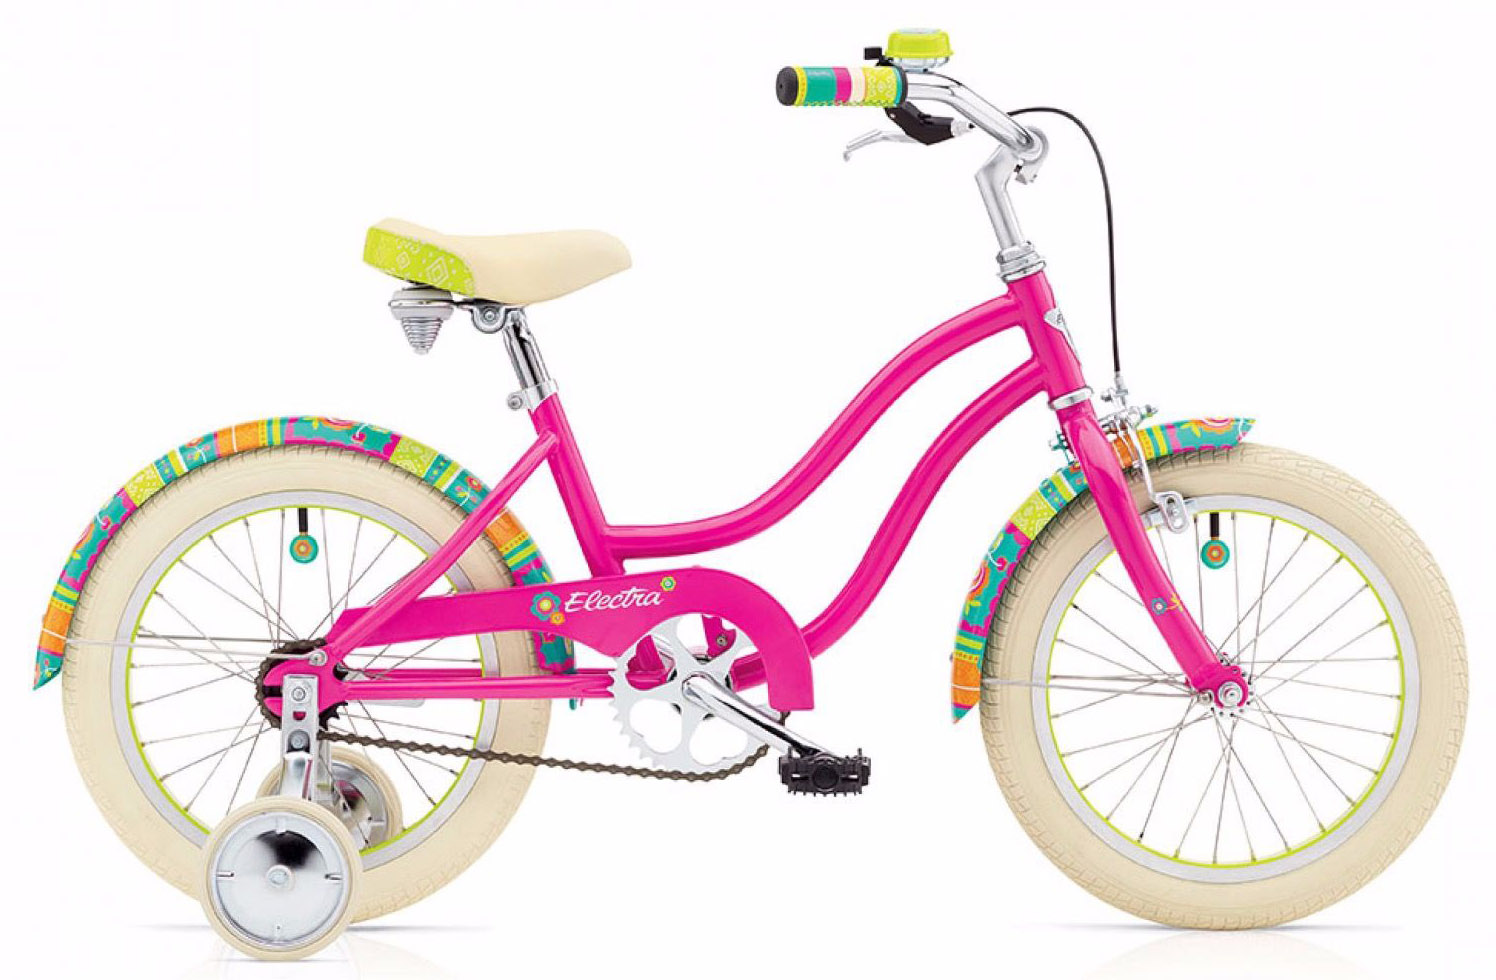  Отзывы о Детском велосипеде Electra Water Lily 1 16 2020